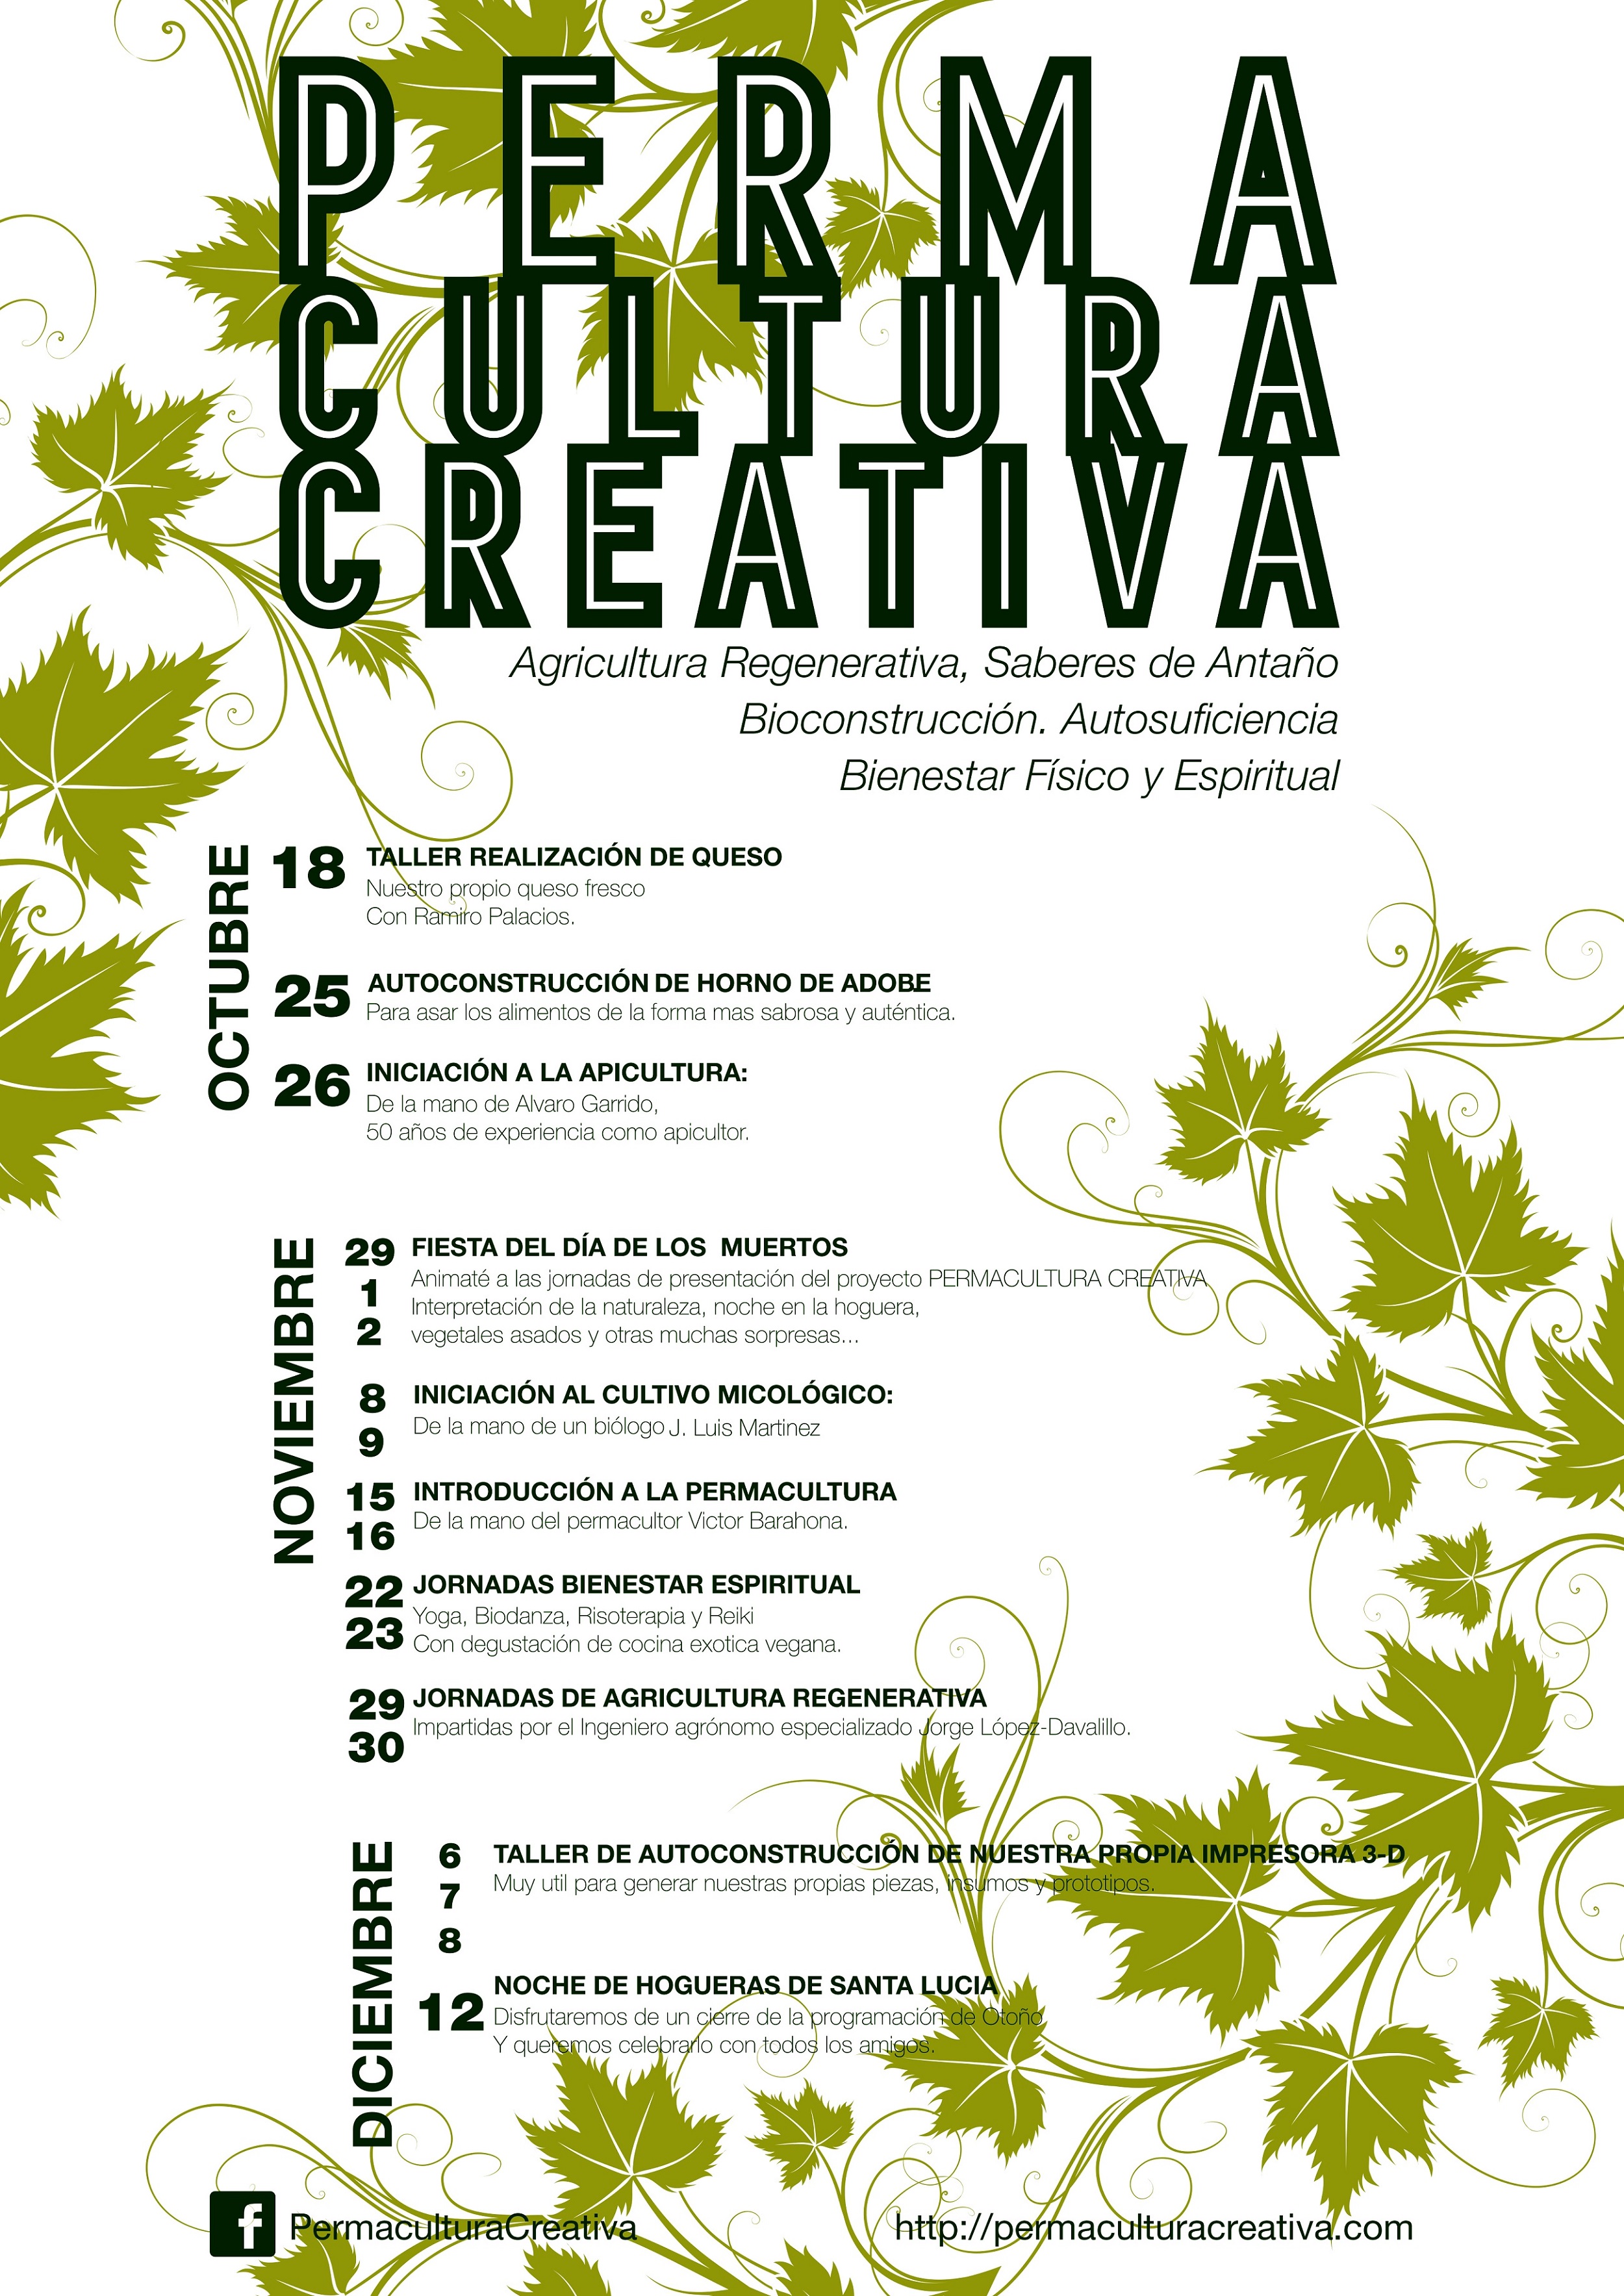 Cartel informativo con los eventos Otoño 2014 Permacultura Creativa